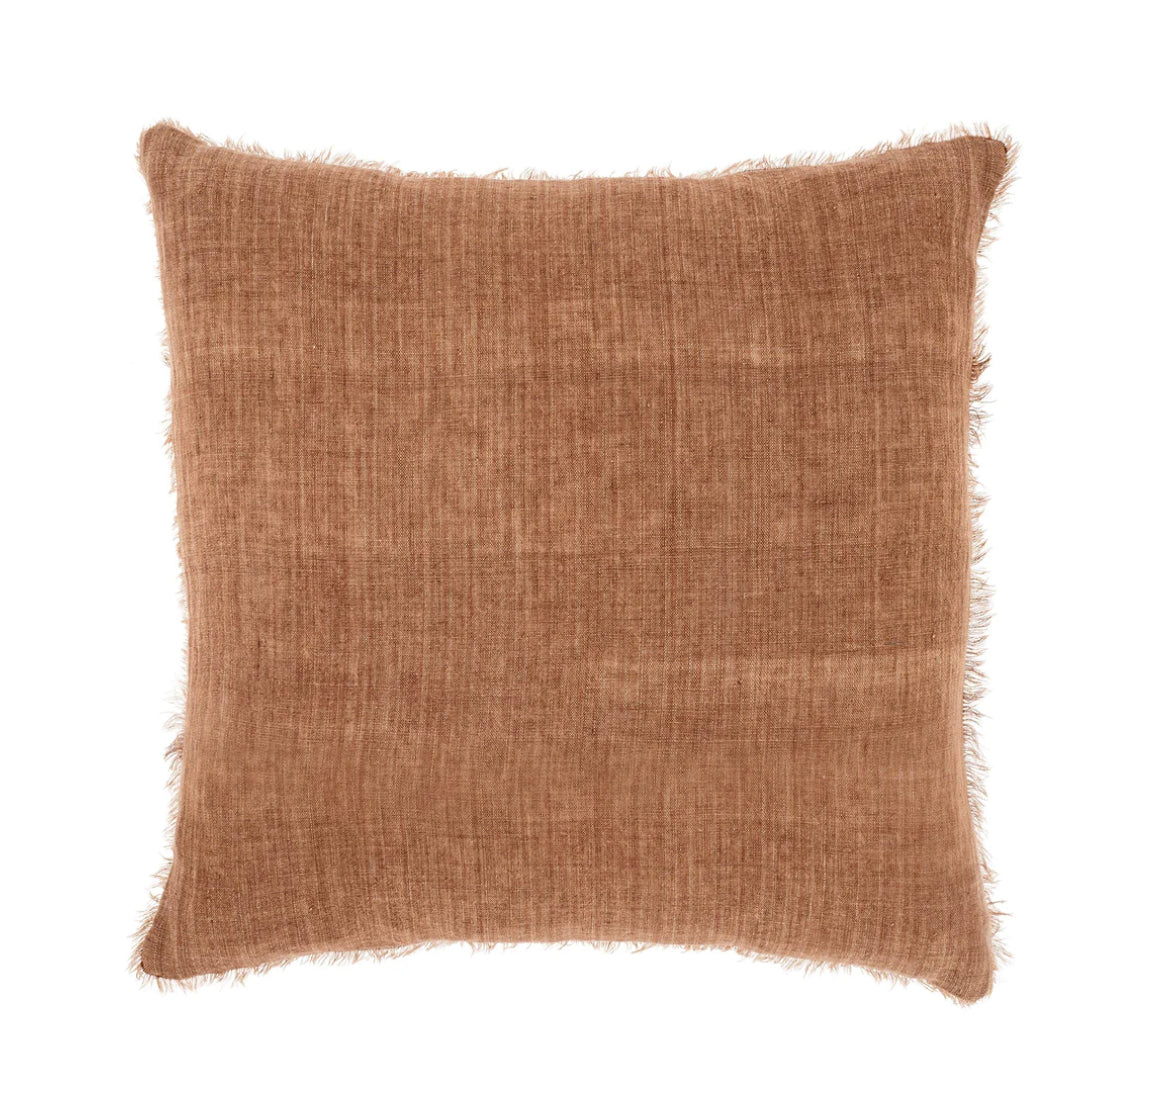 Rooibos Linen Pillow - 20 x 20